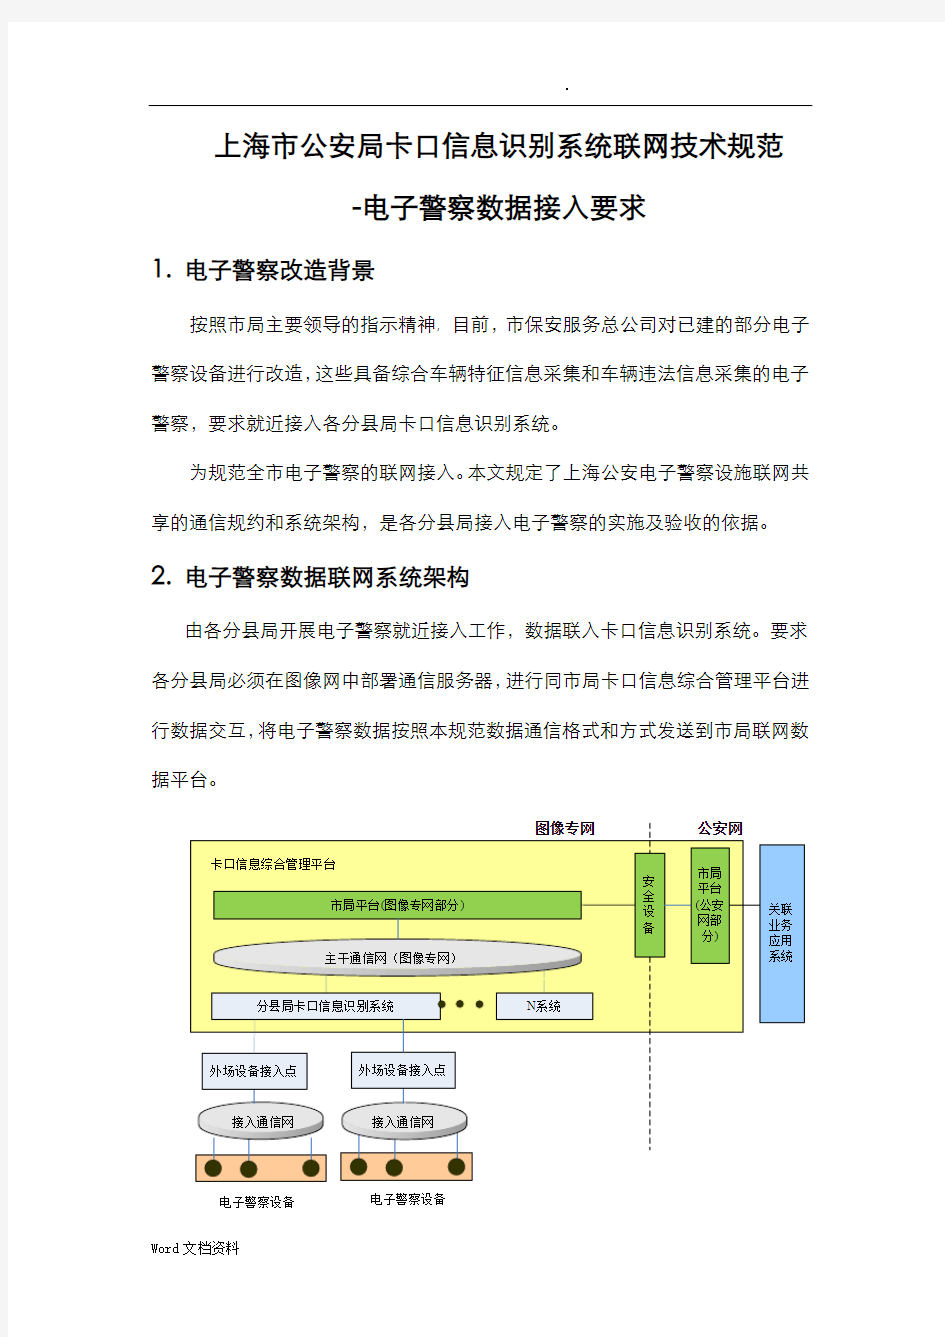 上海公安卡口信息识别系统联网技术规范-电子警察数据接入要求